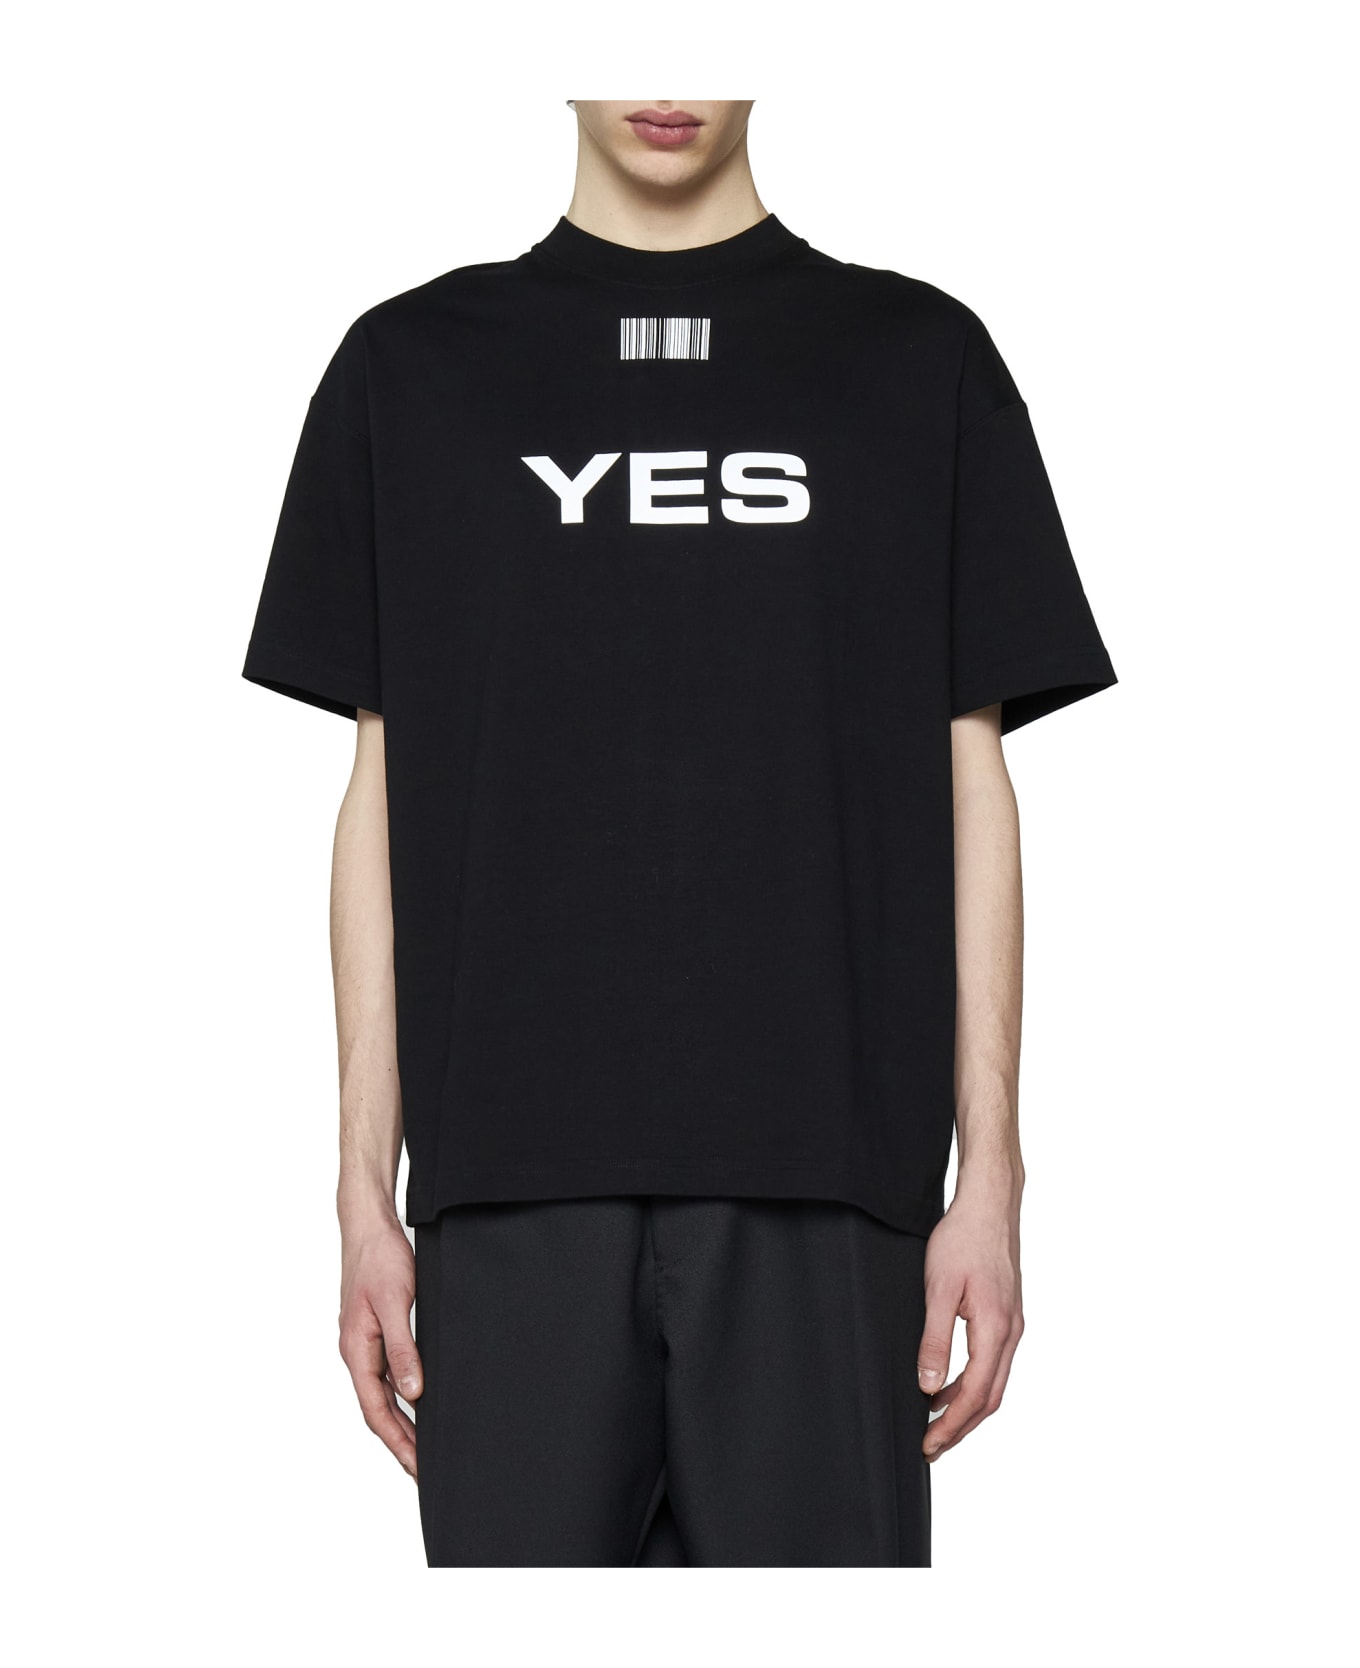 VTMNTS T-Shirt - Black